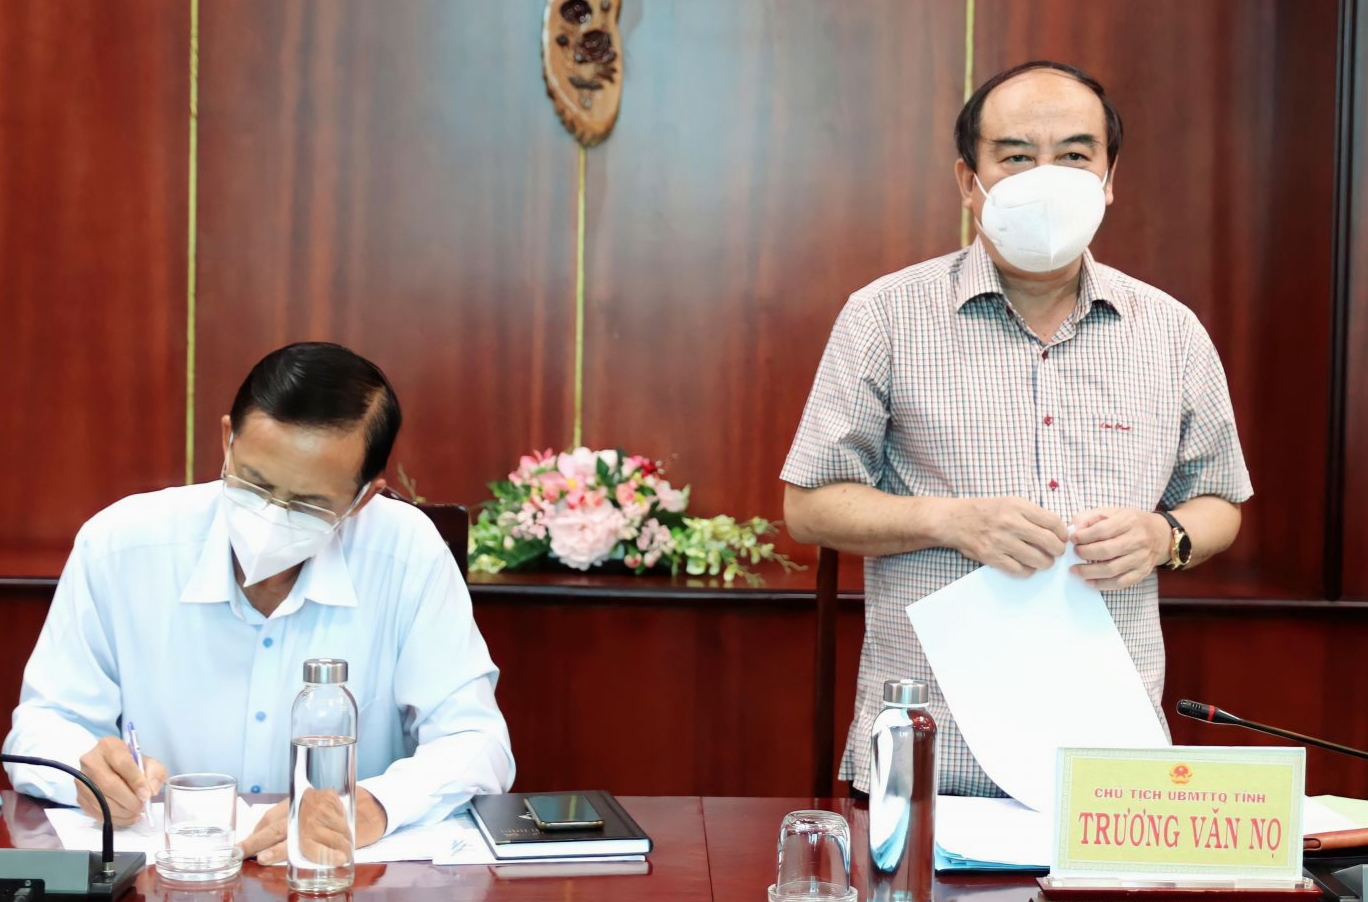 Ông Trương Văn Nọ (đứng) nêu ý kiến trong một cuộc giám sát về thực hiện các chính sách hỗ trợ đối tượng gặp khó khăn do dịch bệnh